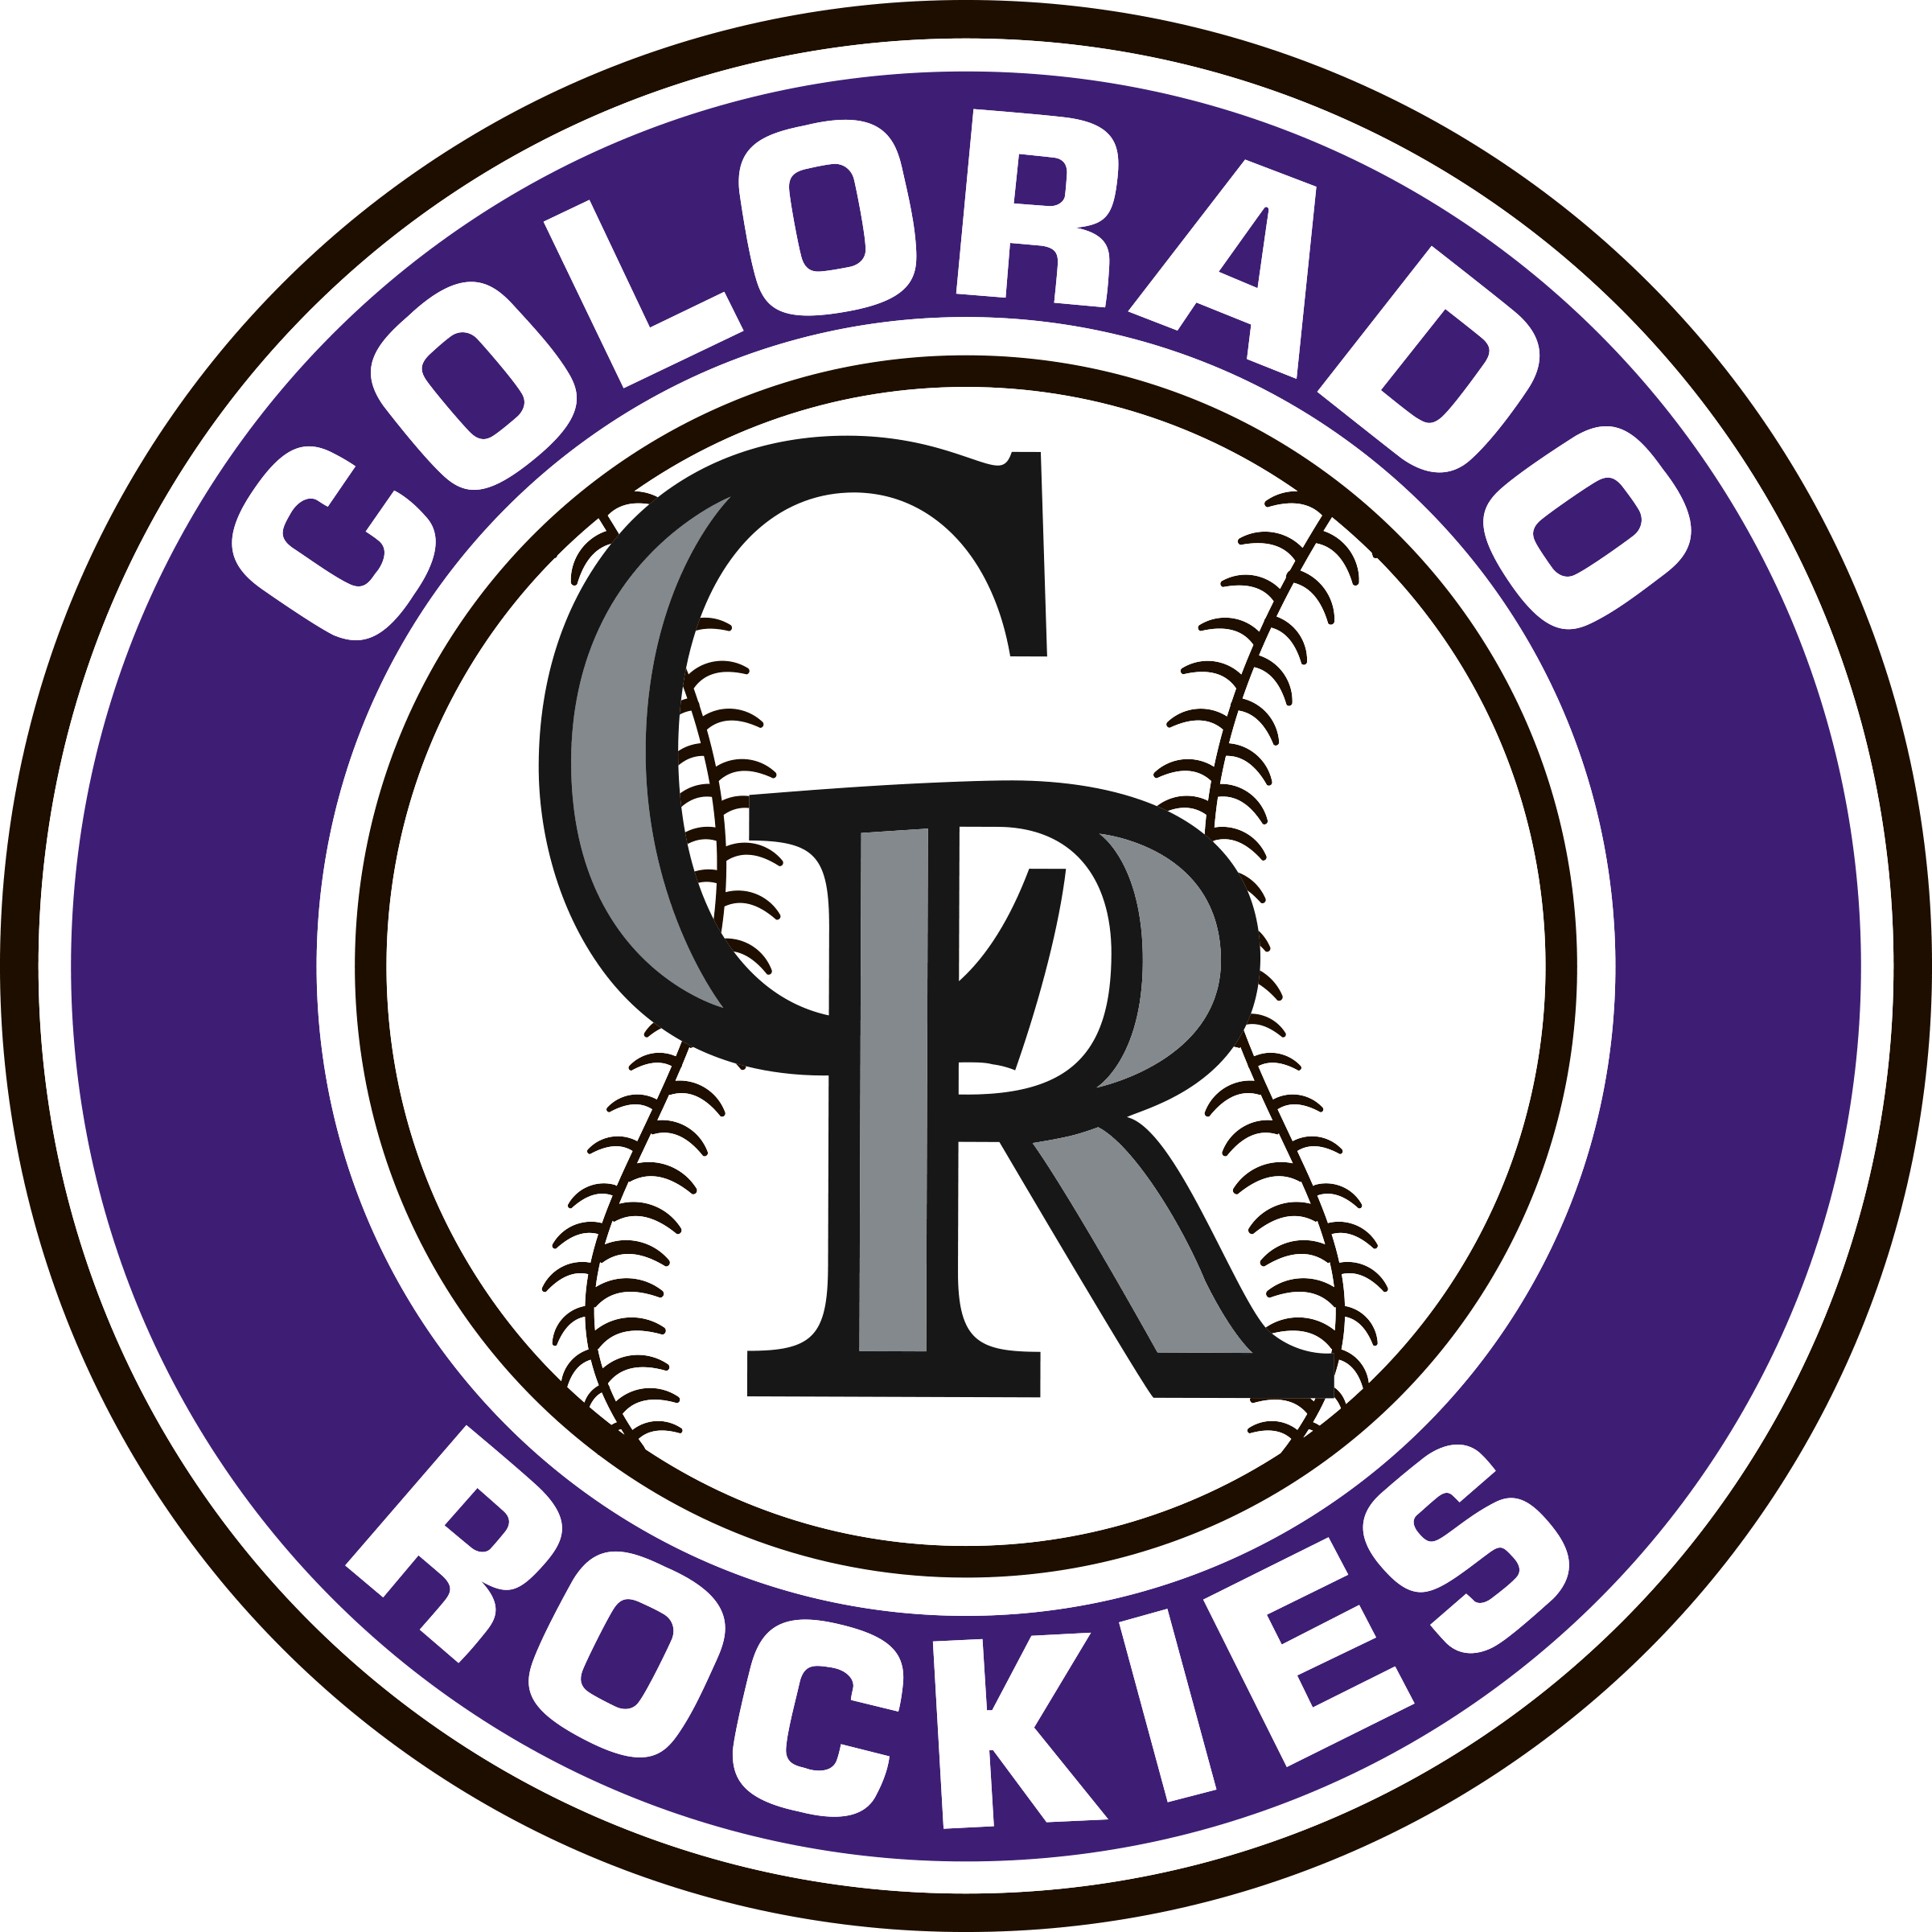 Colorado Rockies Logo Transparent Background